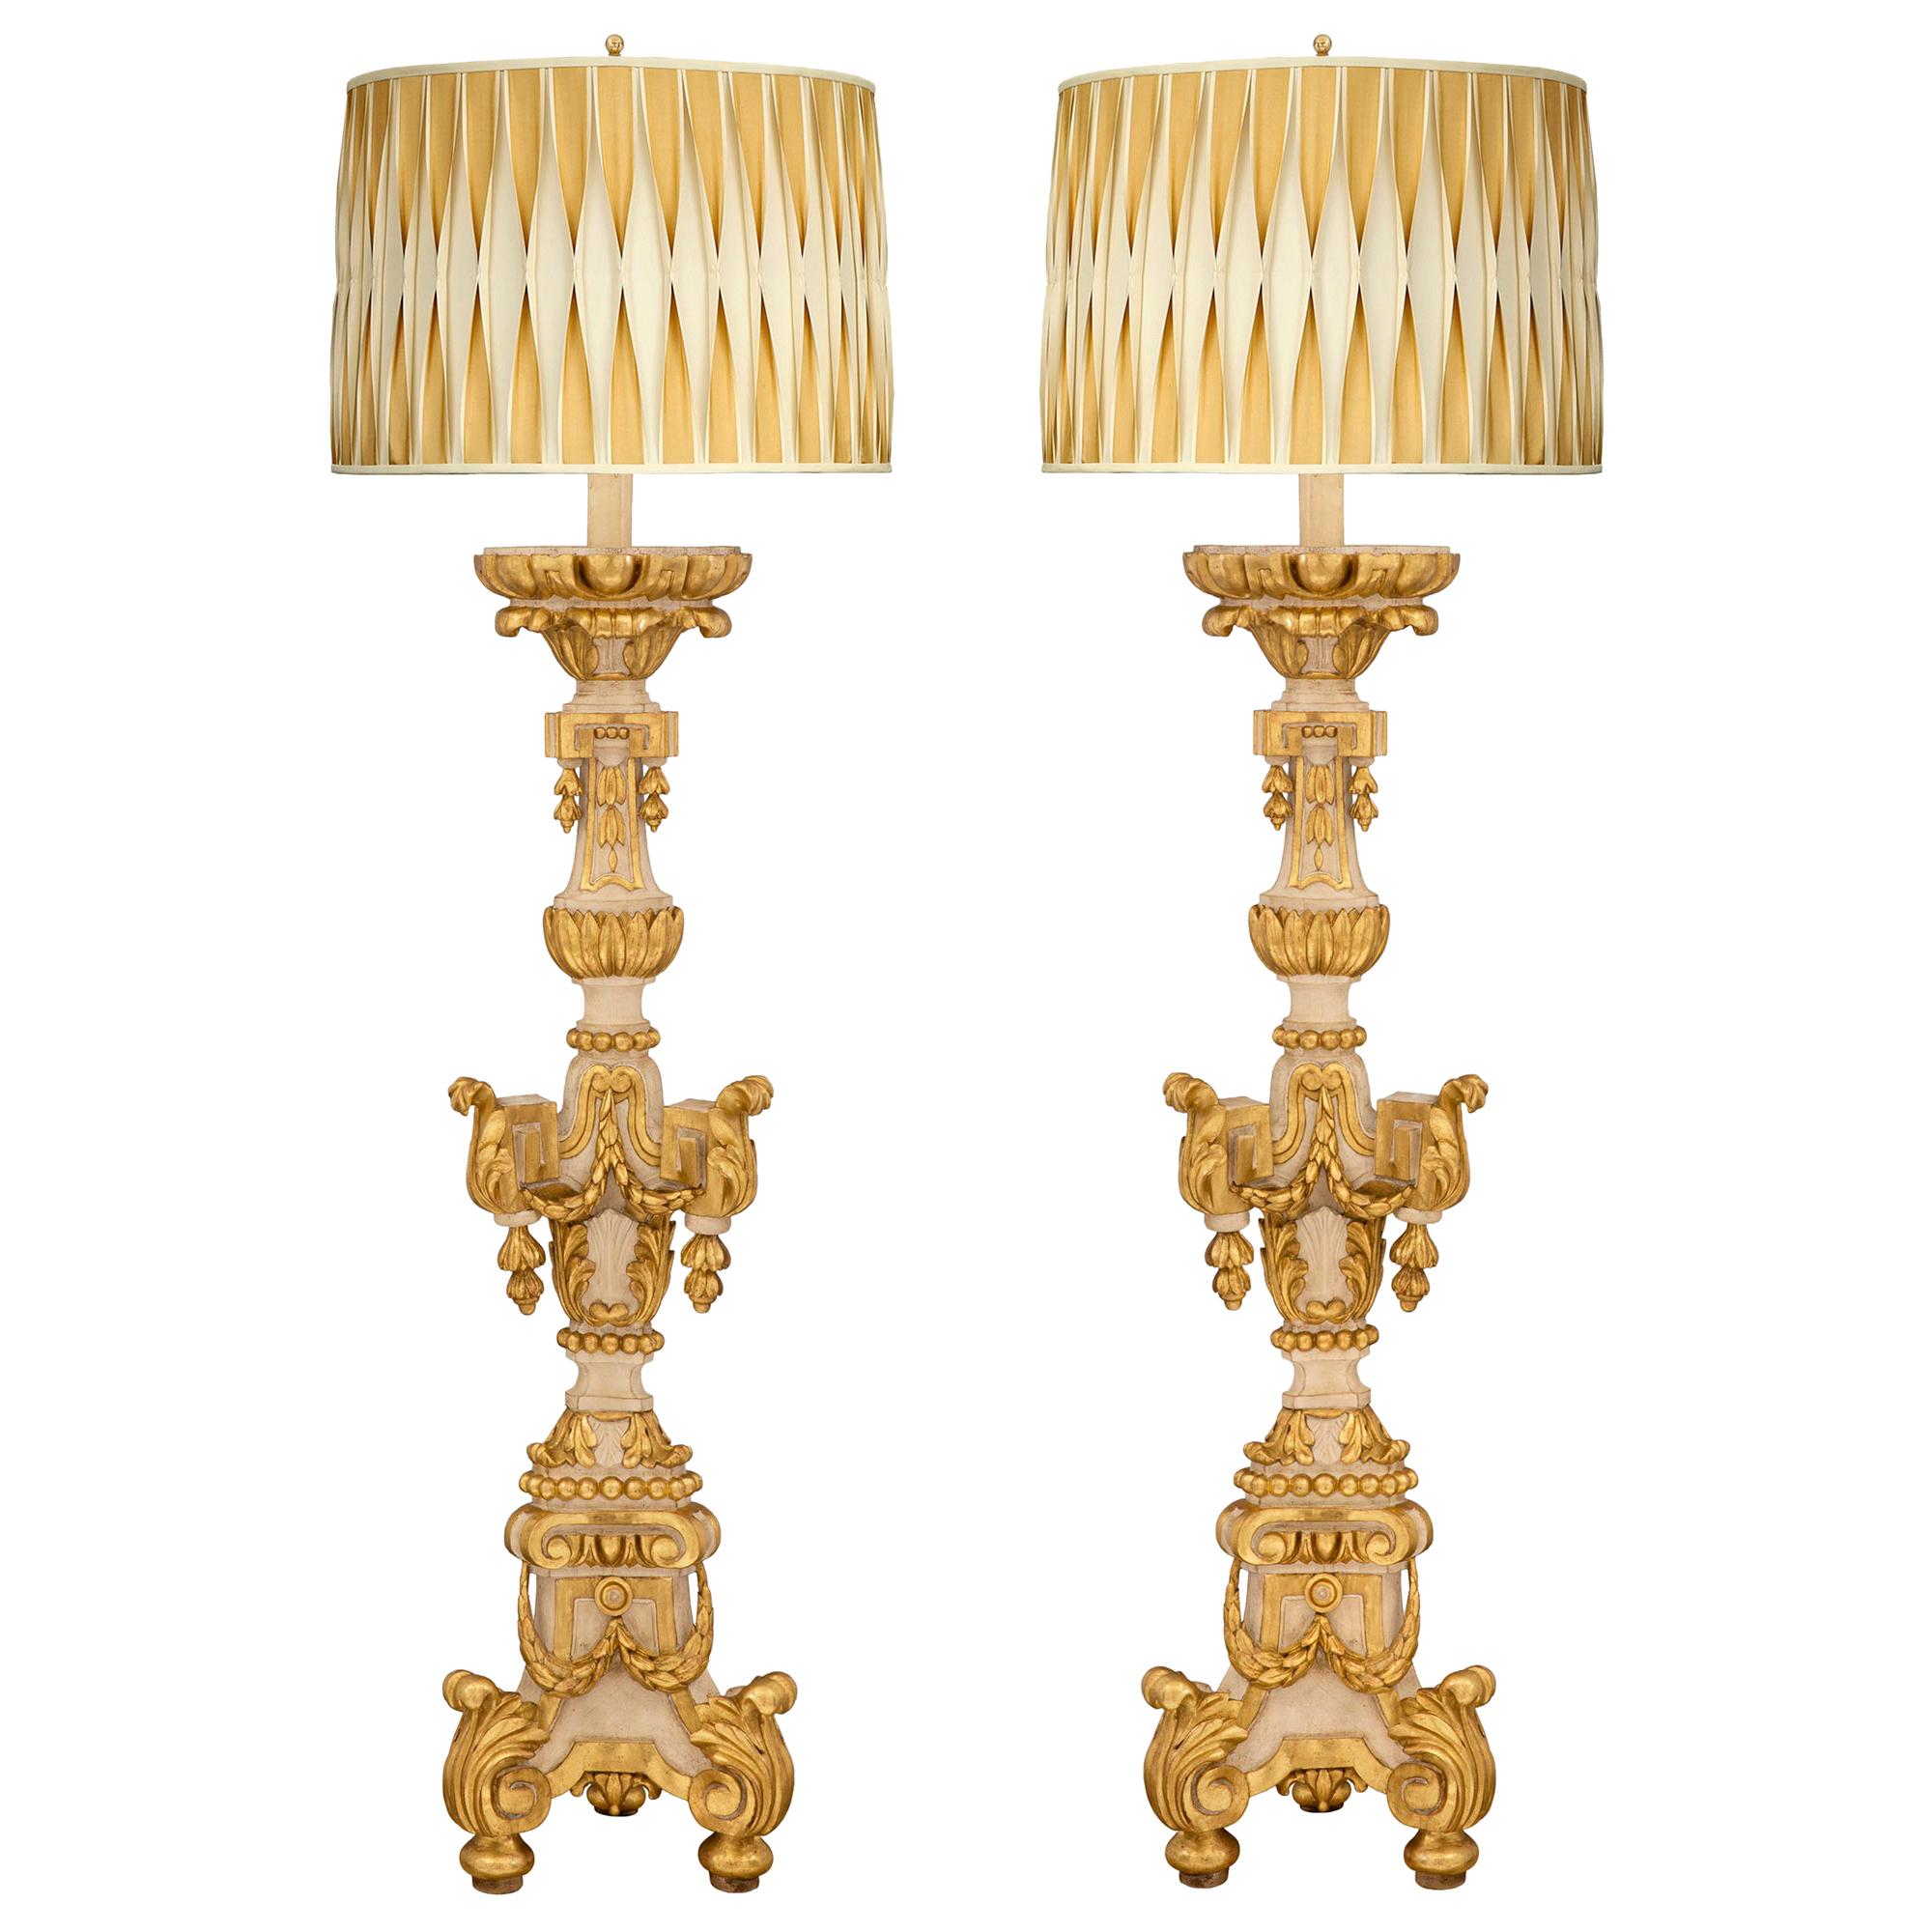 Paire de lampadaires italiens d'époque baroque du 18ème siècle en bois patiné et doré